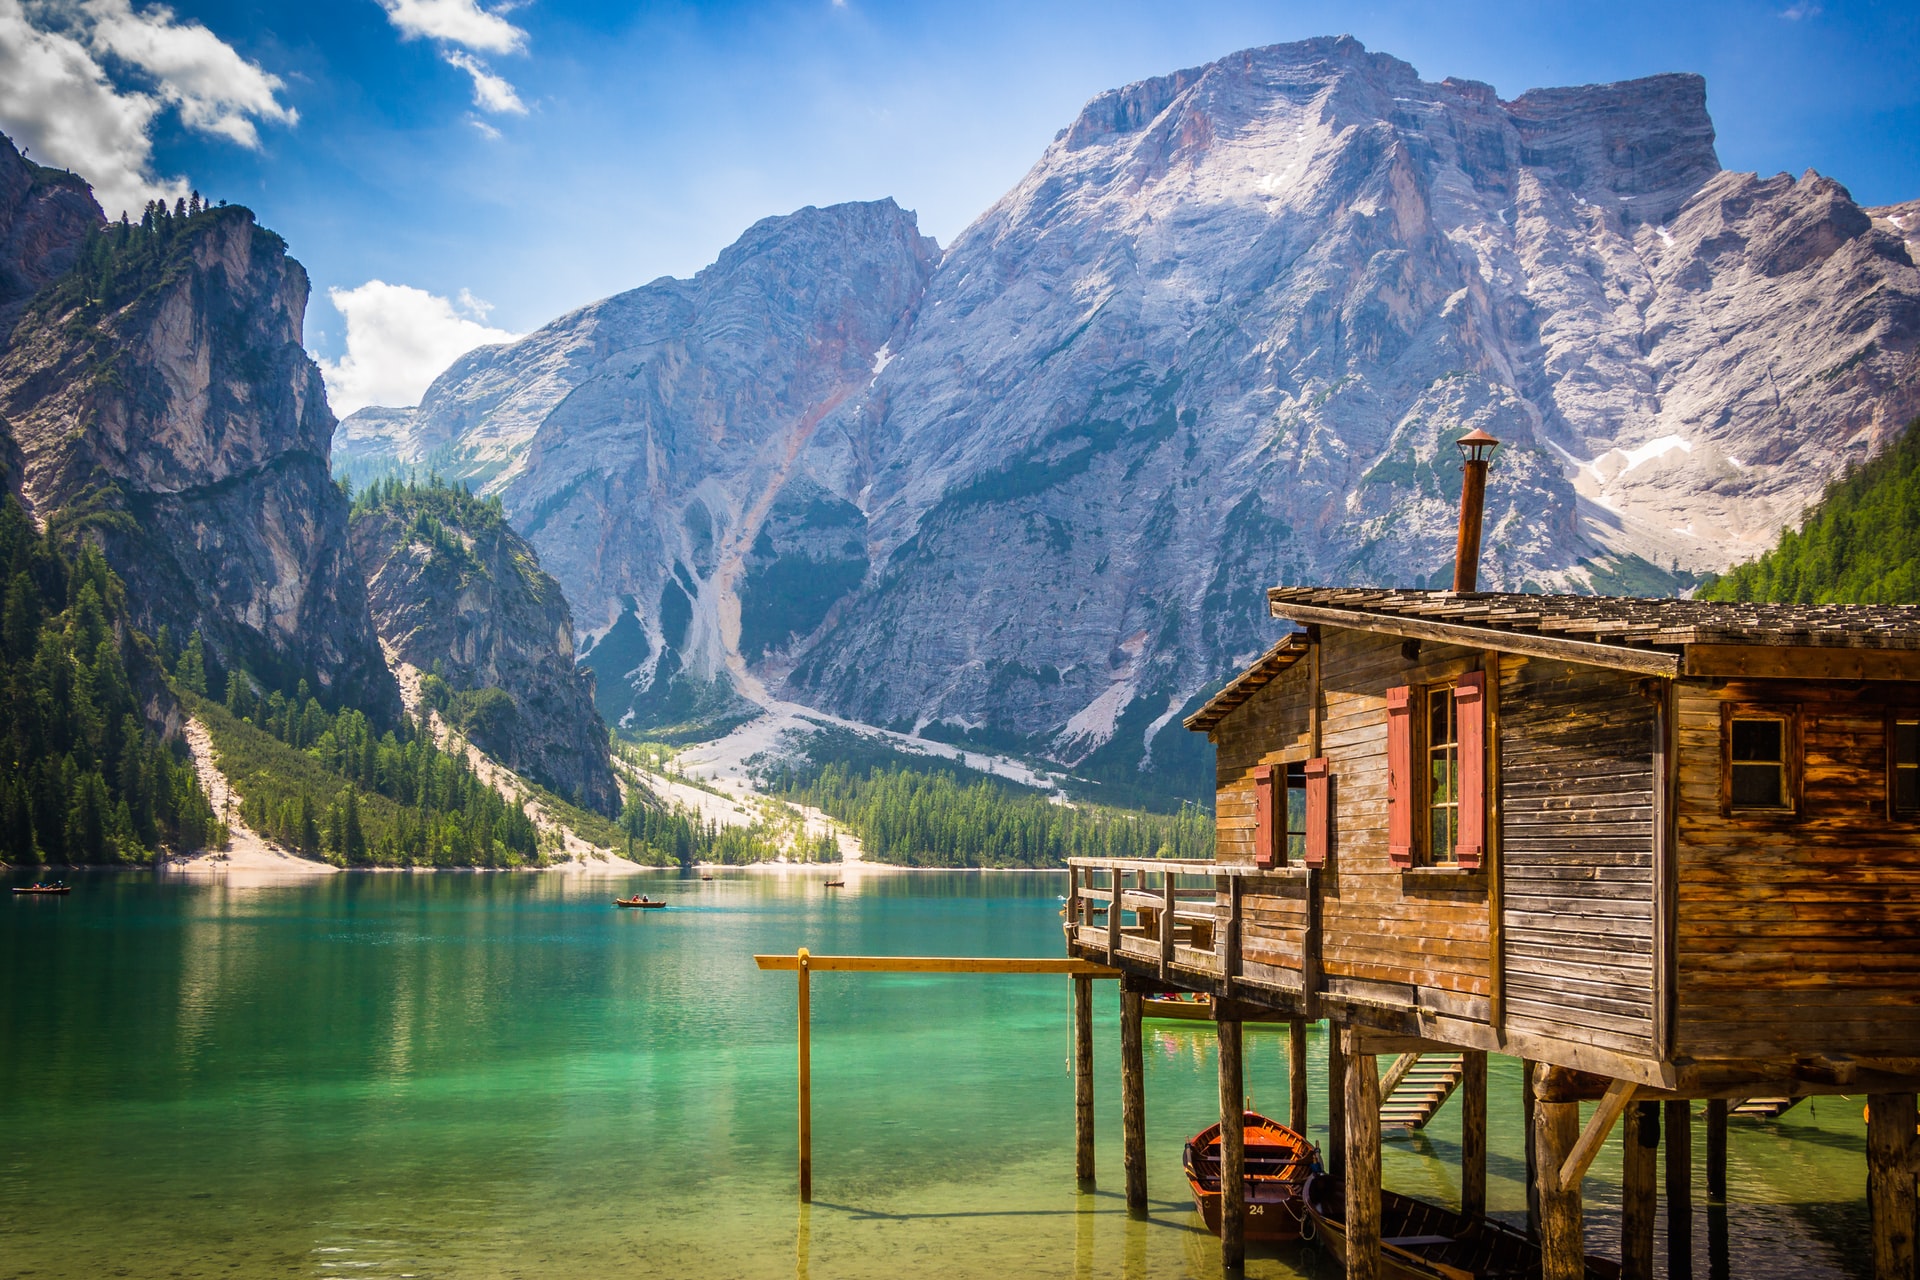 Núi Dolomites, Ý có những dãy núi cao cùng hồ nước trong tuyệt đẹp